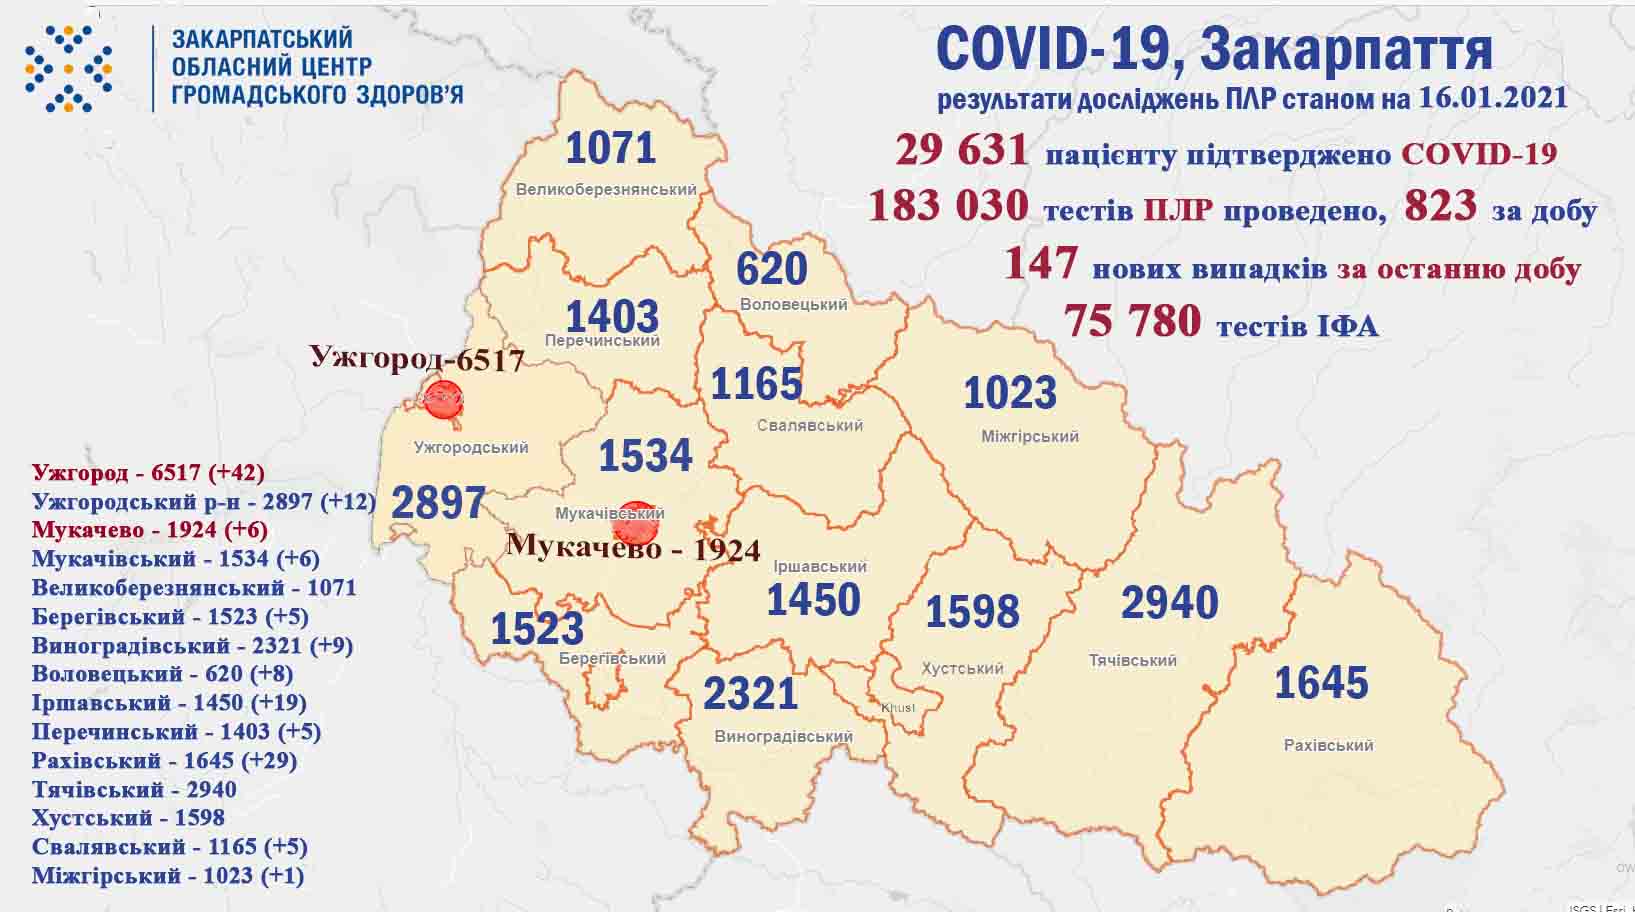 147 випадків COVID-19 виявлено на Закарпатті за добу, троє пацієнтів померло 